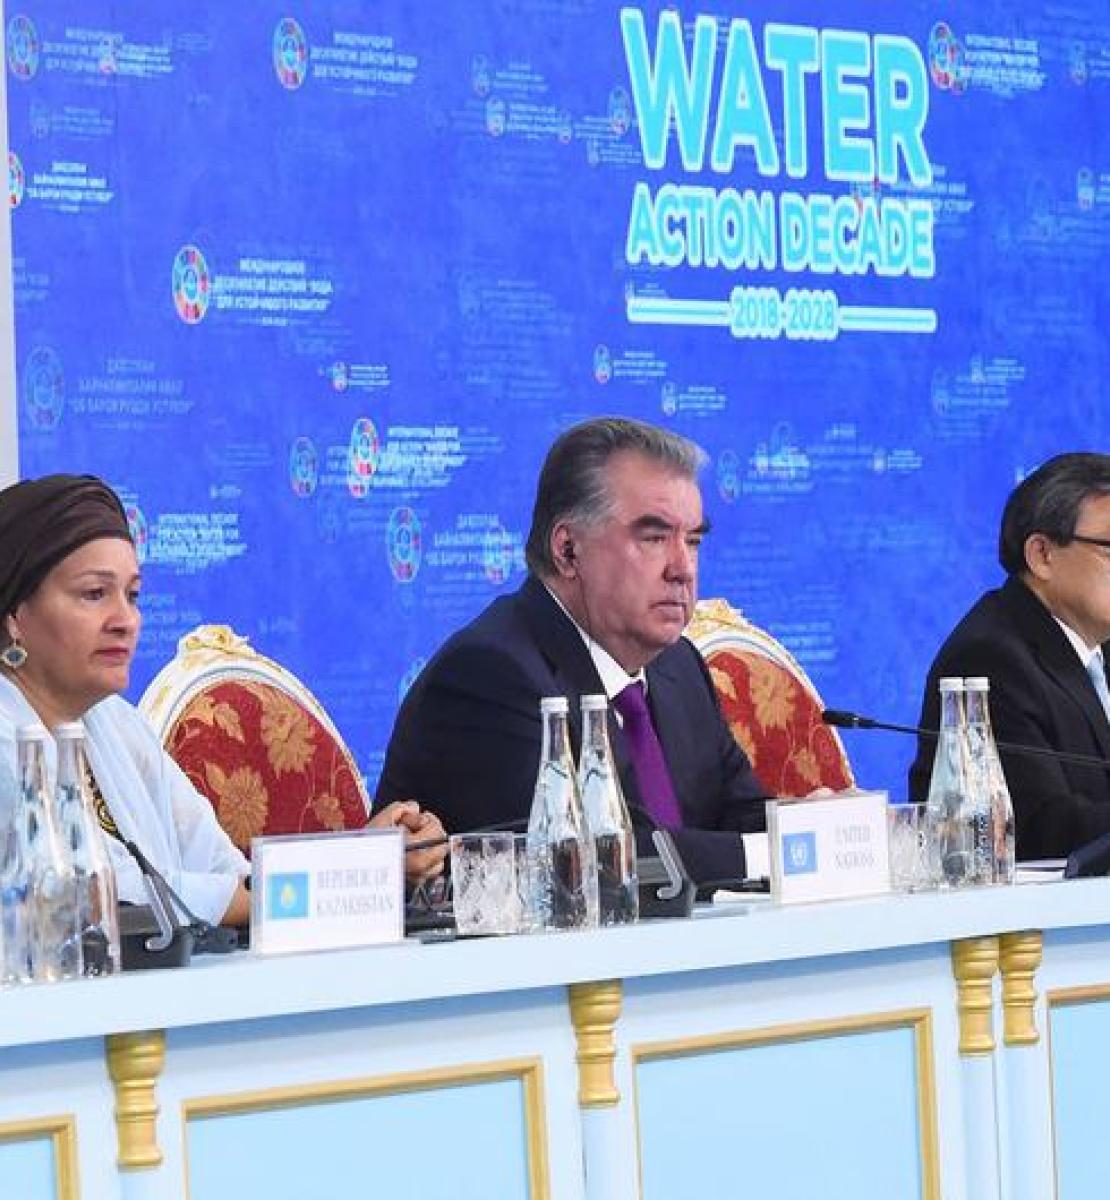 La Vice-Secrétaire générale de l’ONU, Amina Mohammed, à l'ouverture de la deuxième Conférence sur la Décennie internationale d'action pour l'eau à Douchanbé, au Tadjikistan. 